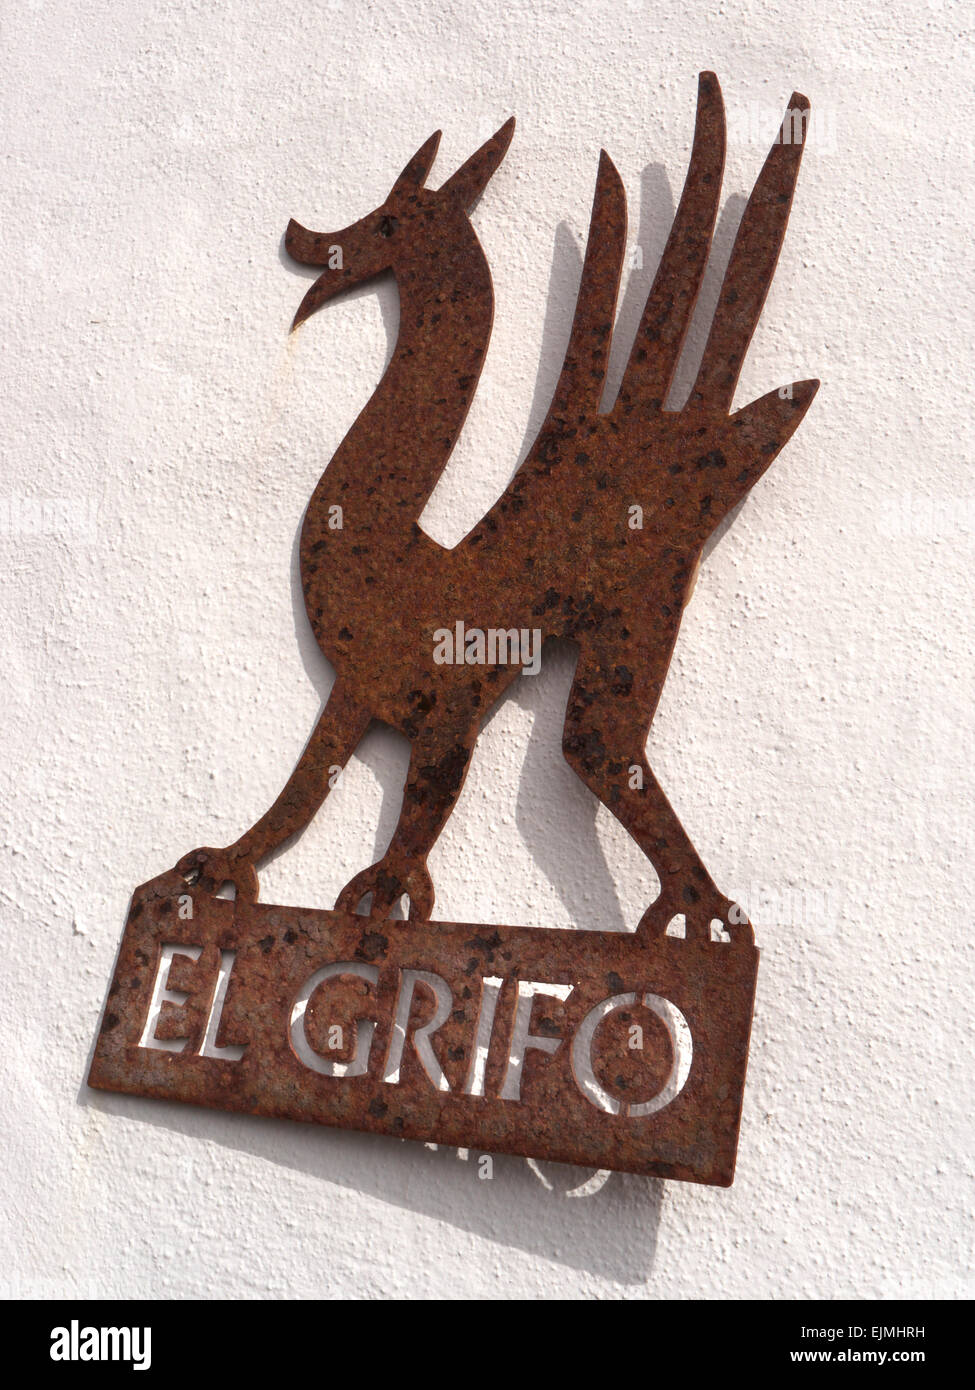 EL GRIFO plaque métal rustique sur Bodega la publicité murale célèbre les producteurs de vin Lanzarote El Grifo Canaries Espagne Banque D'Images